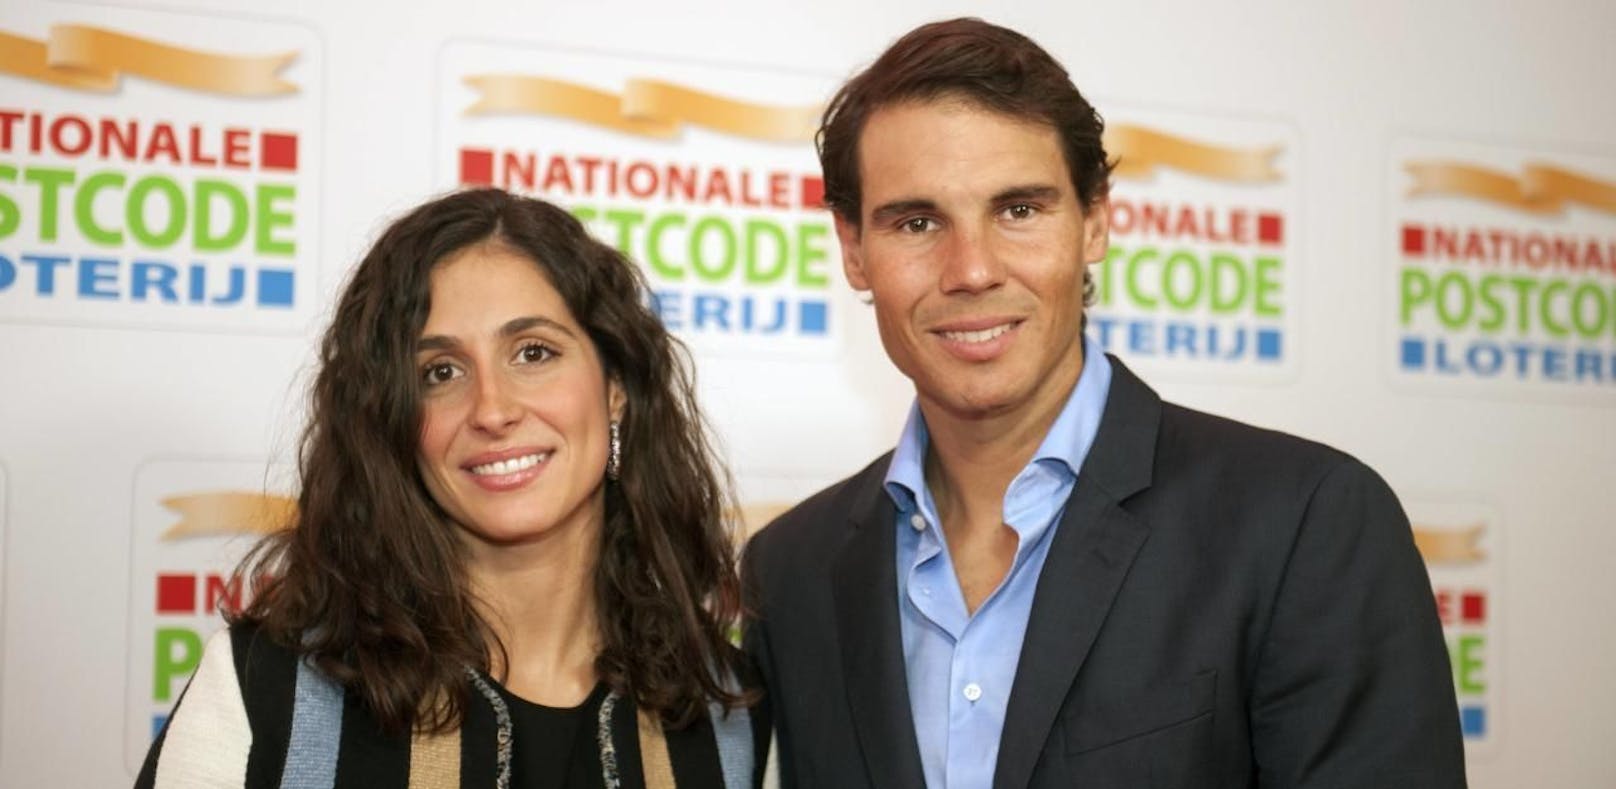 Xisca Perello und Rafael Nadal heiraten am Samstag auf Mallorca.